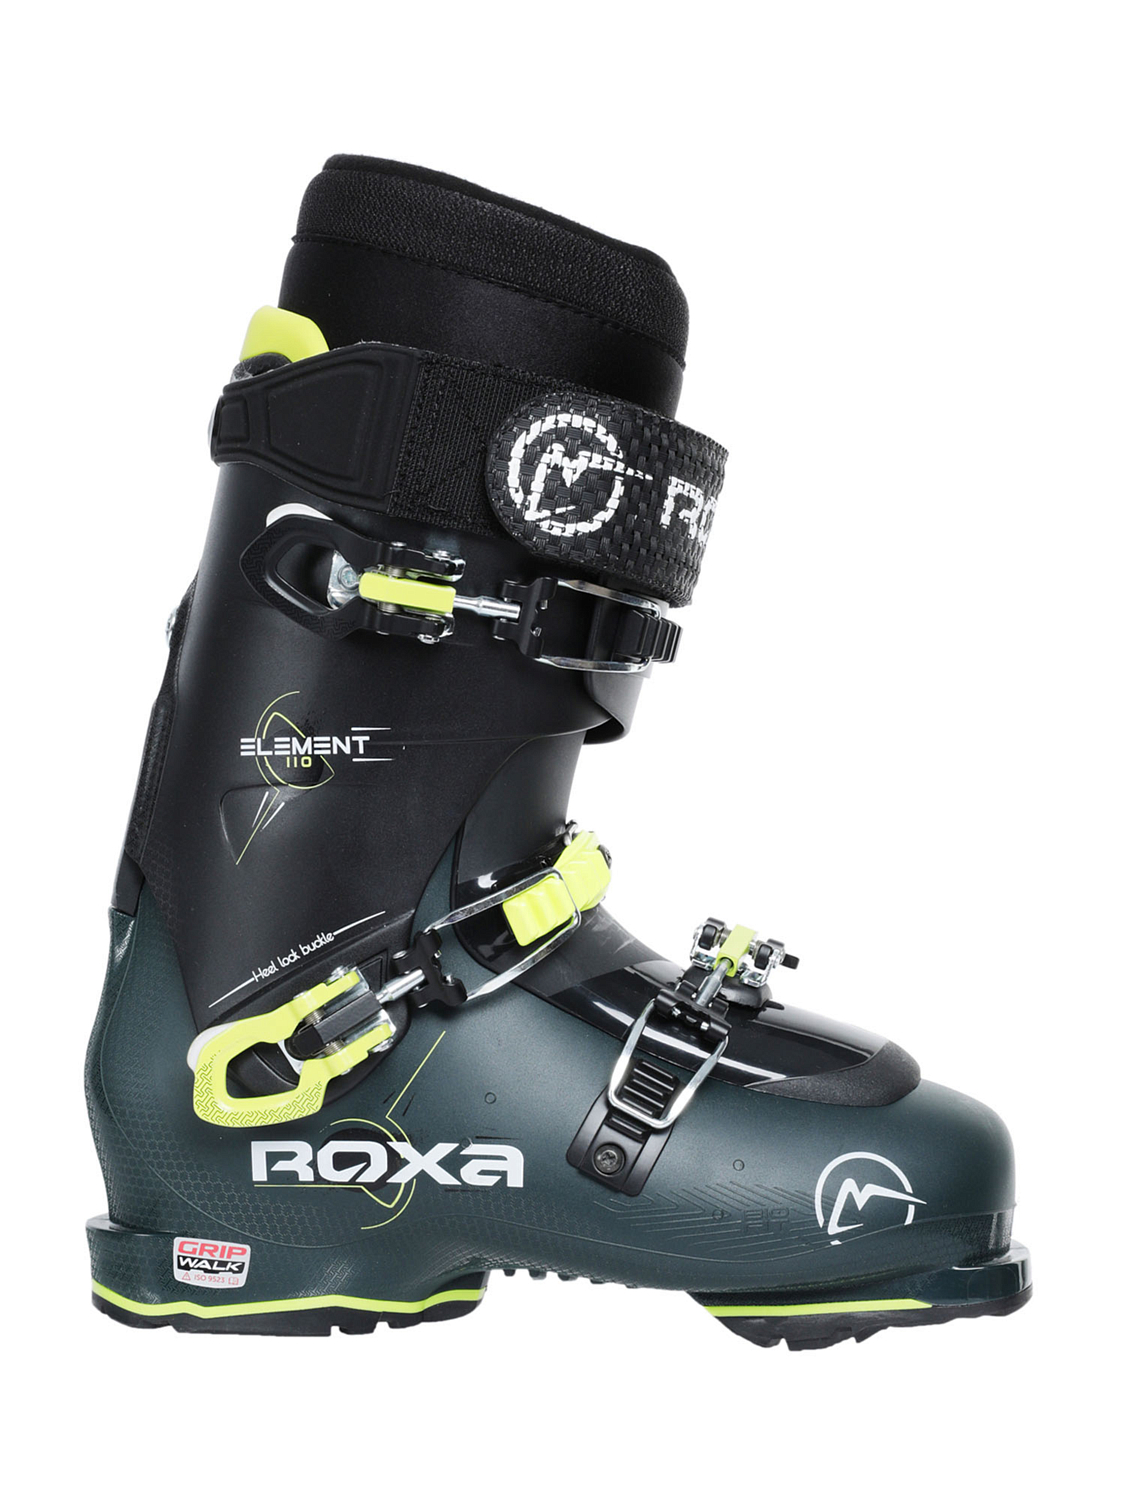 Горнолыжные ботинки ROXA Element 110 I.R. GW Camo/Black